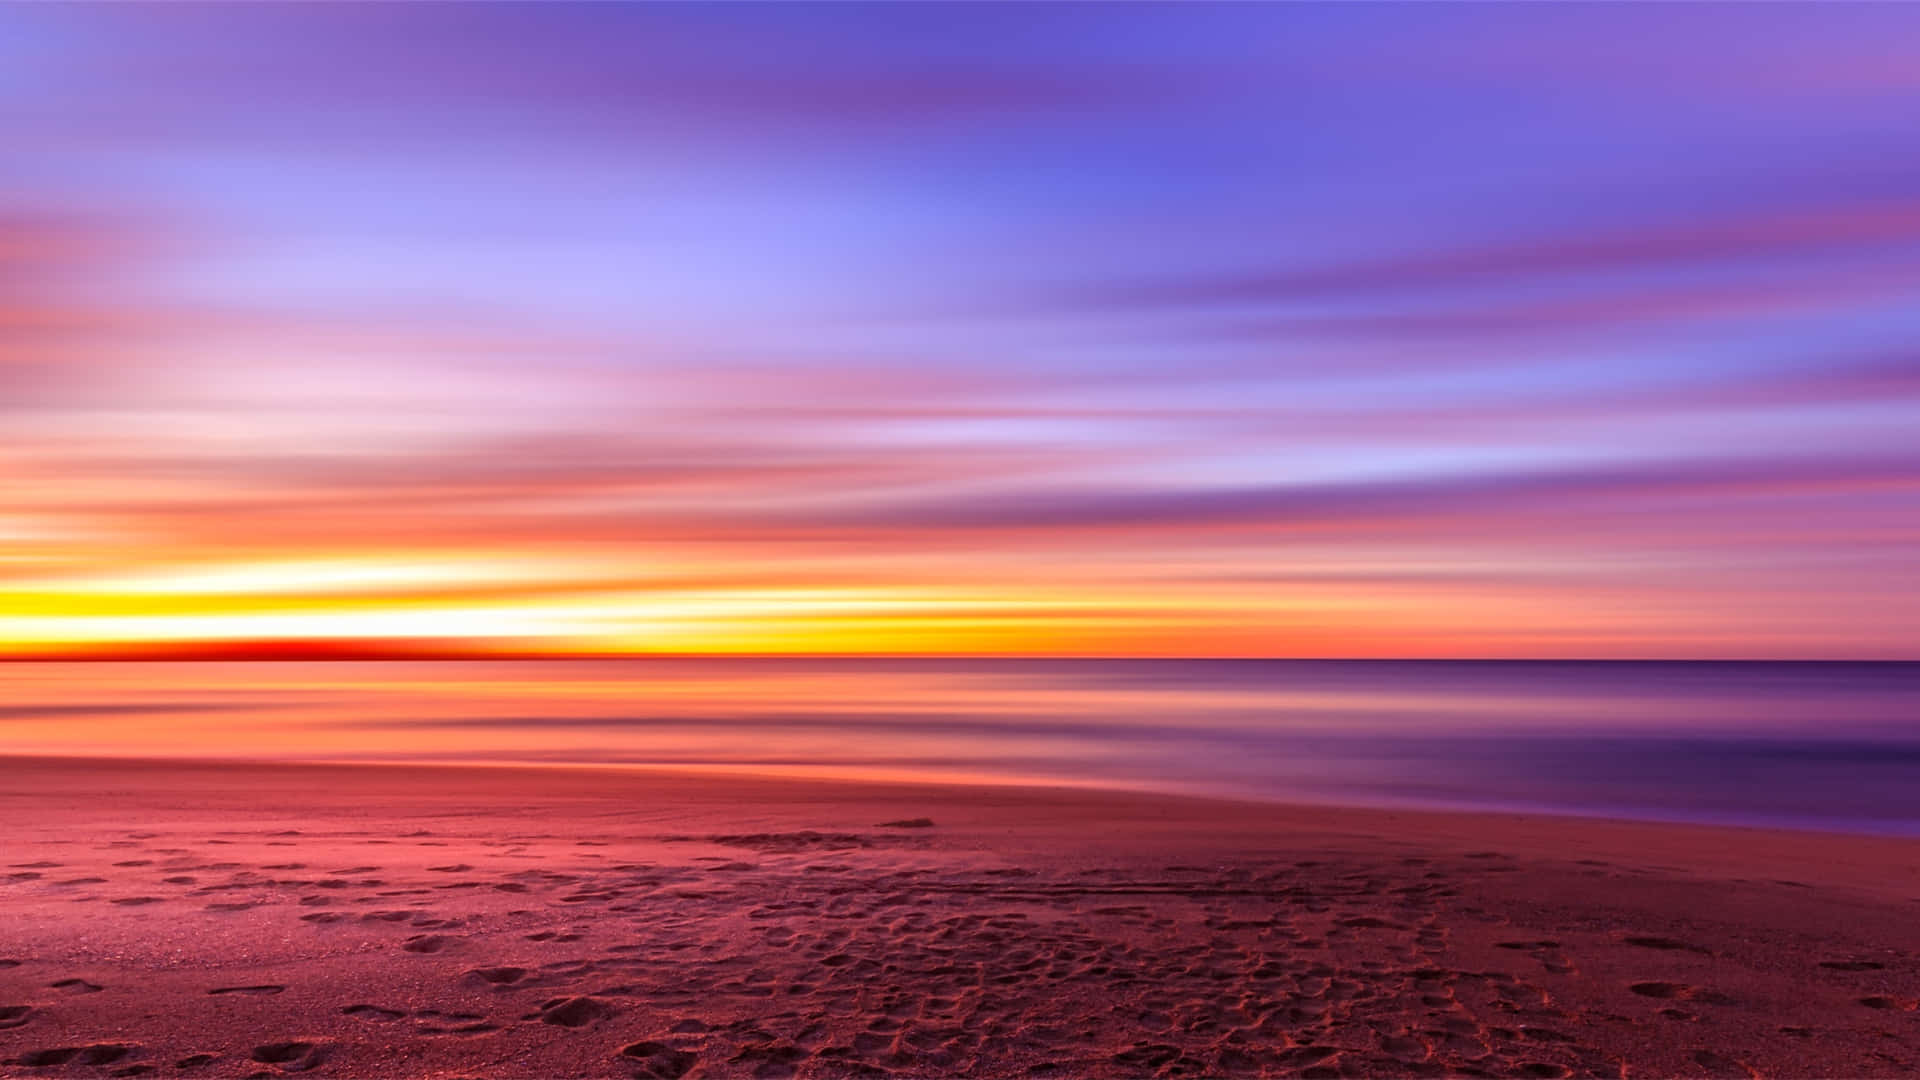 A Serene Beachscape at Sunset Wallpaper